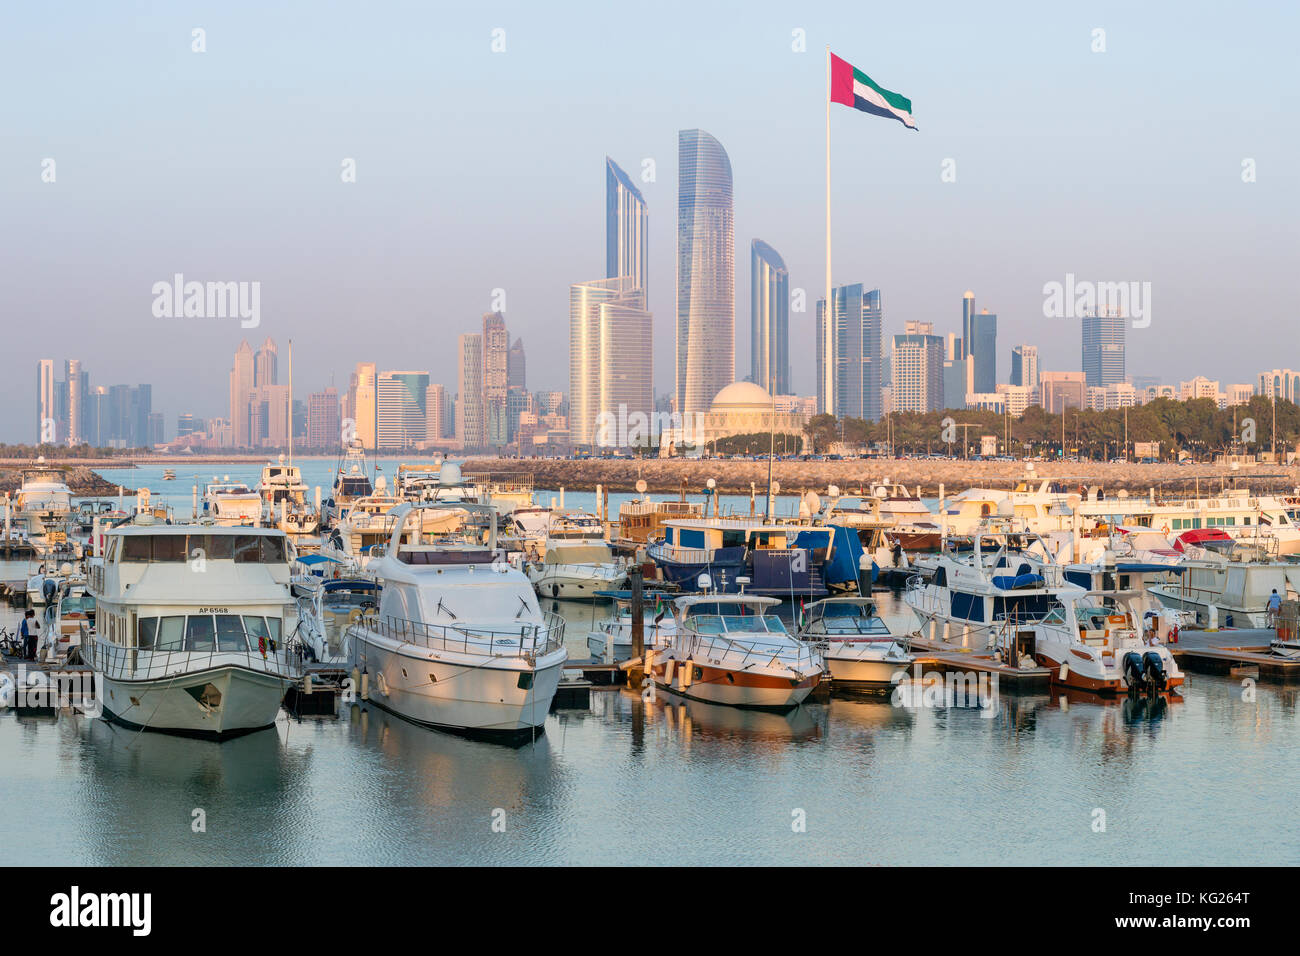 Ciudad moderna y a la marina, en Abu Dhabi, Emiratos Árabes Unidos, oriente medio Foto de stock